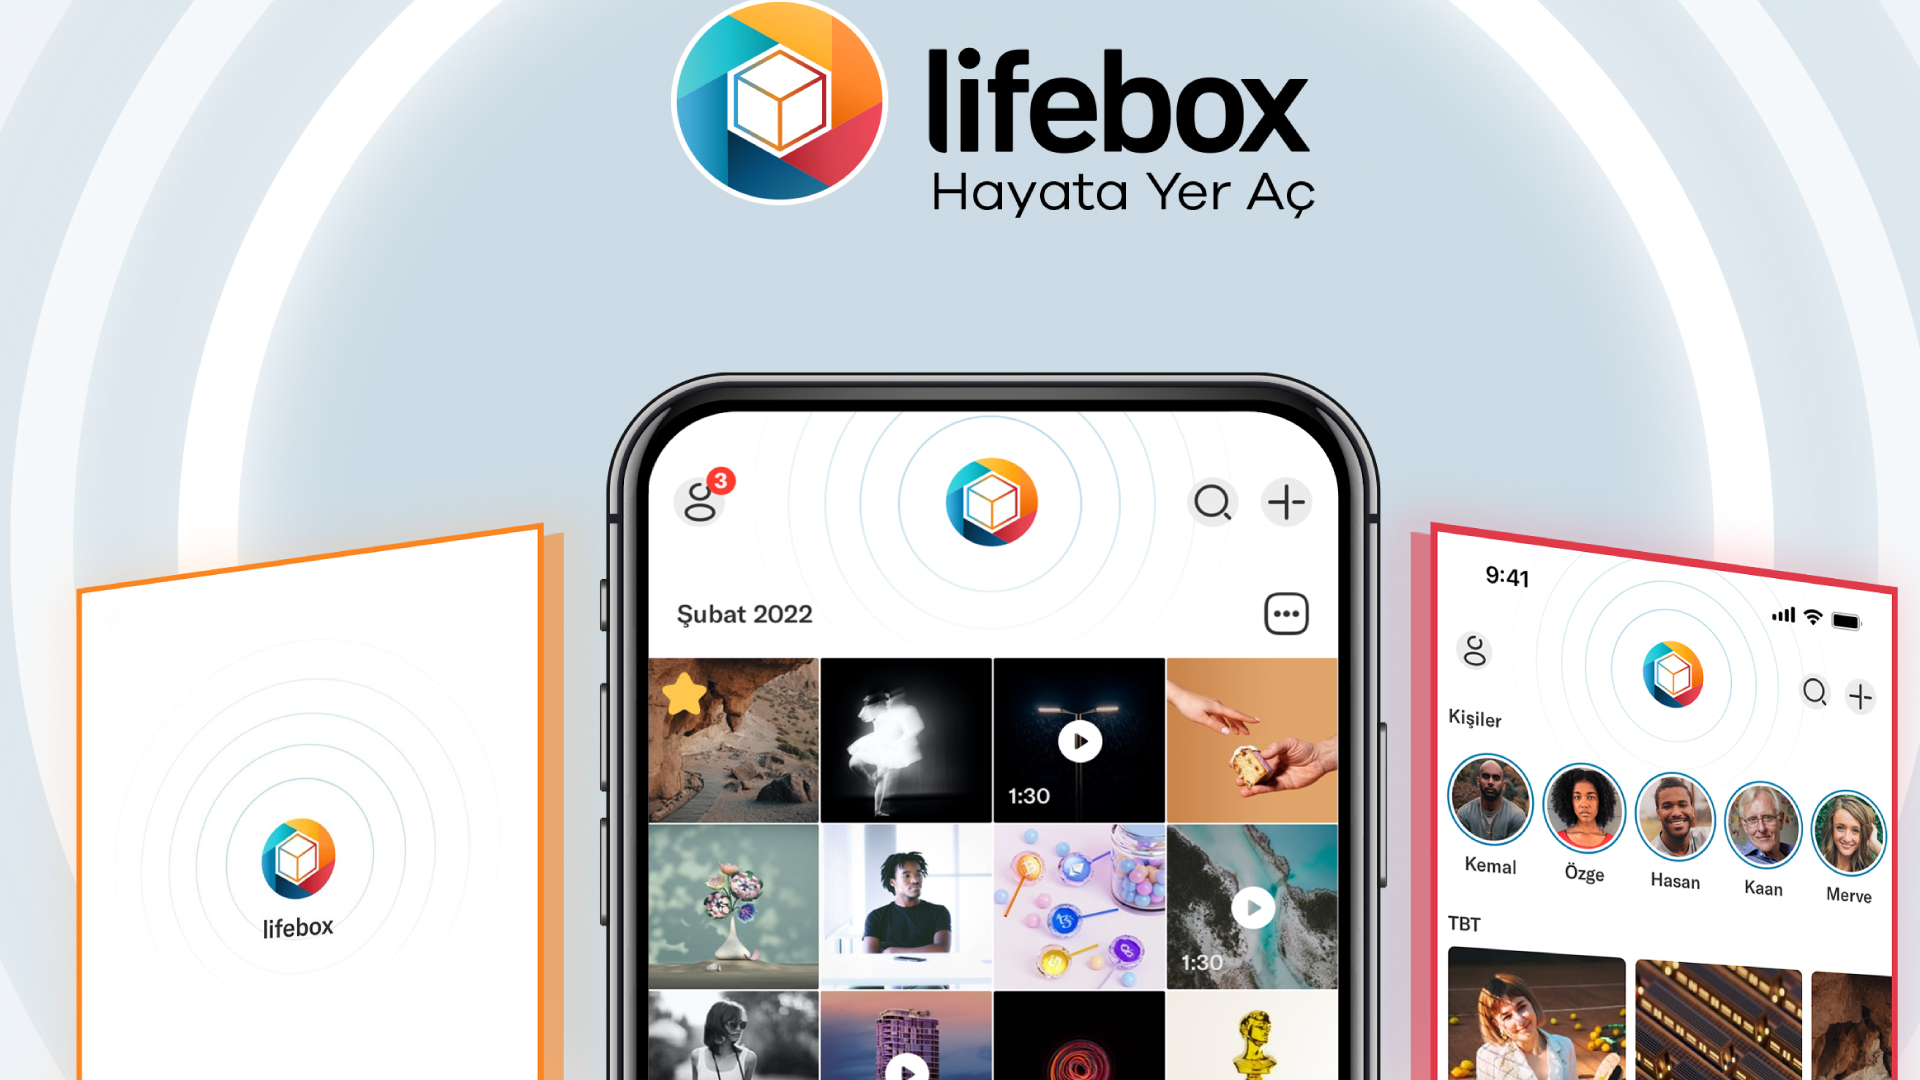 Lifebox ücretli abone sayısı 2 milyona ulaştı